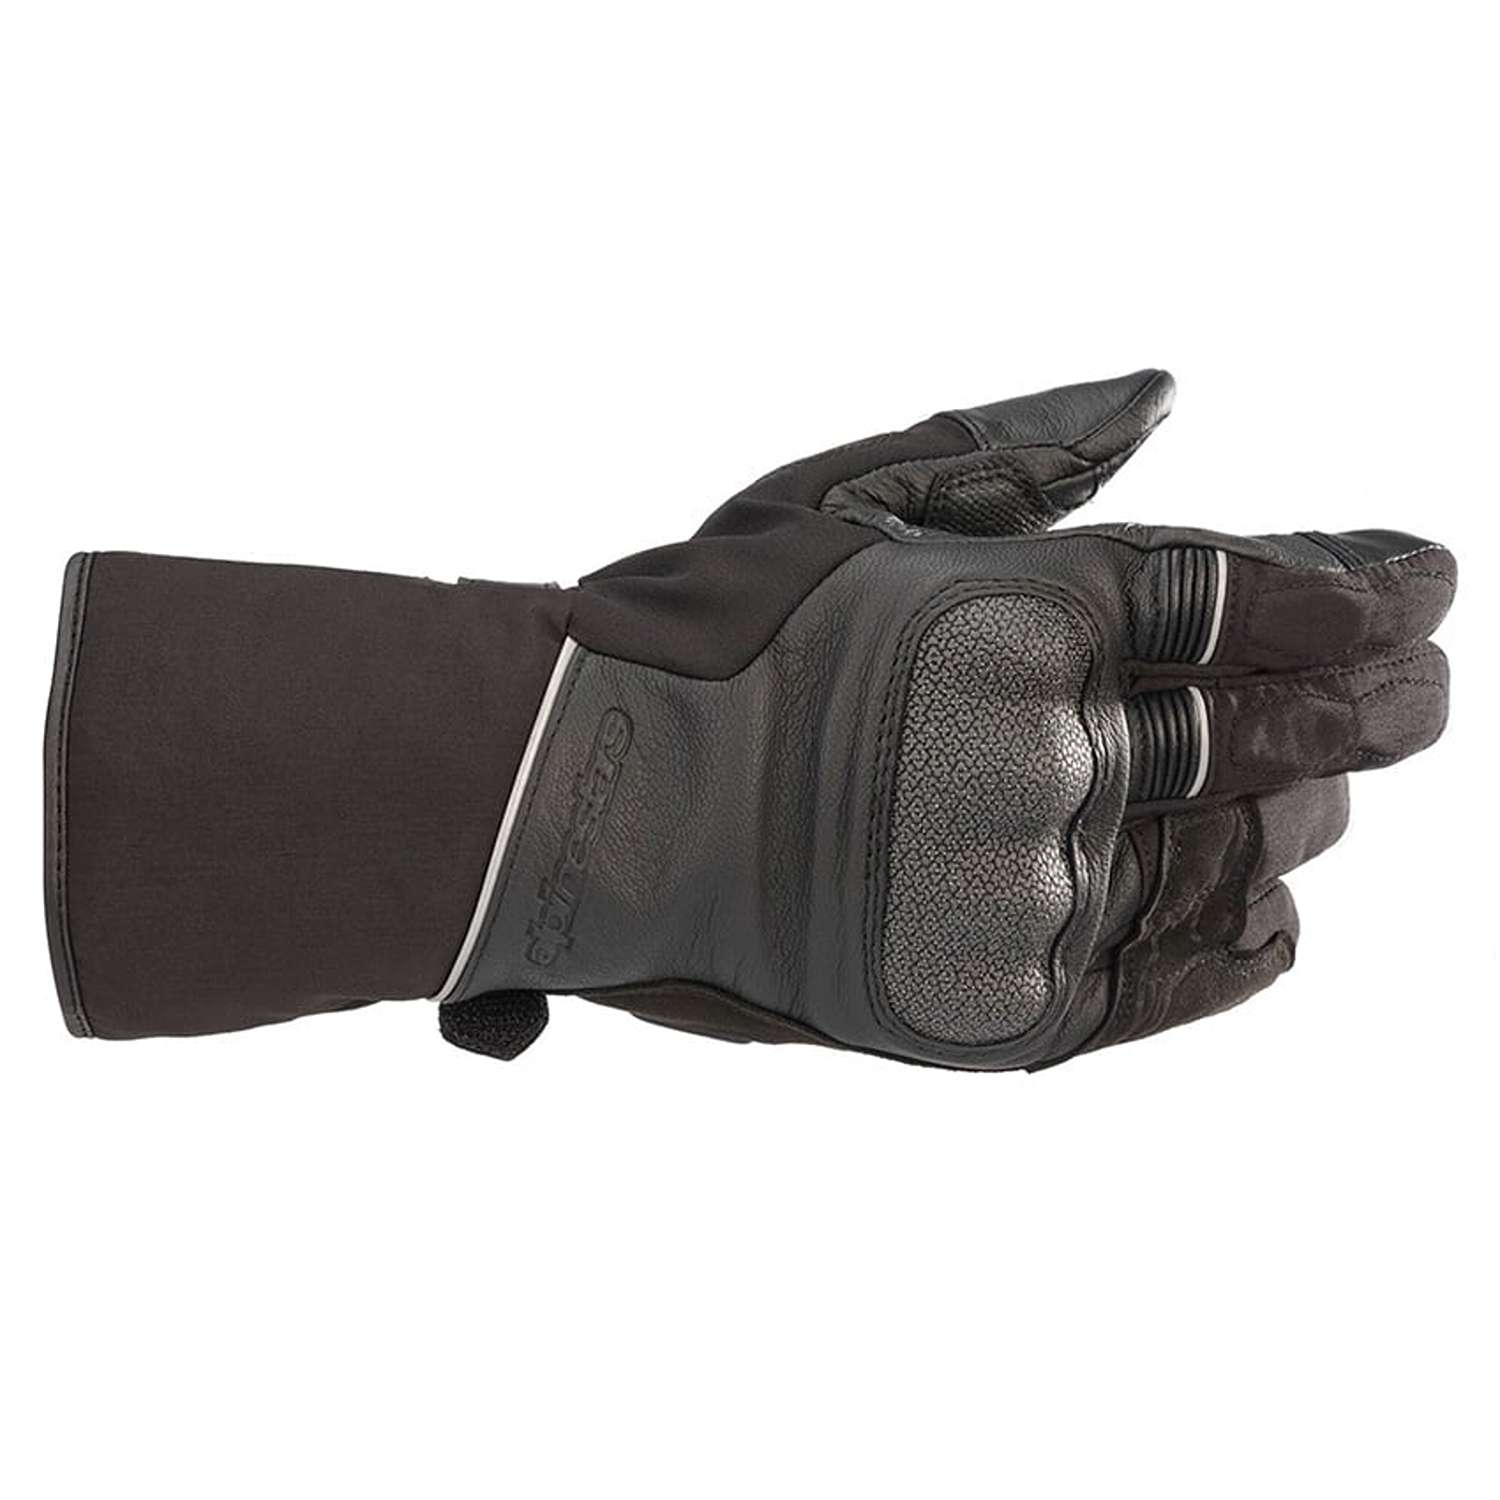 Image of Alpinestars Wr-2 V2 Gore-Tex Gloves With Gore Grip Technology Black Größe XL